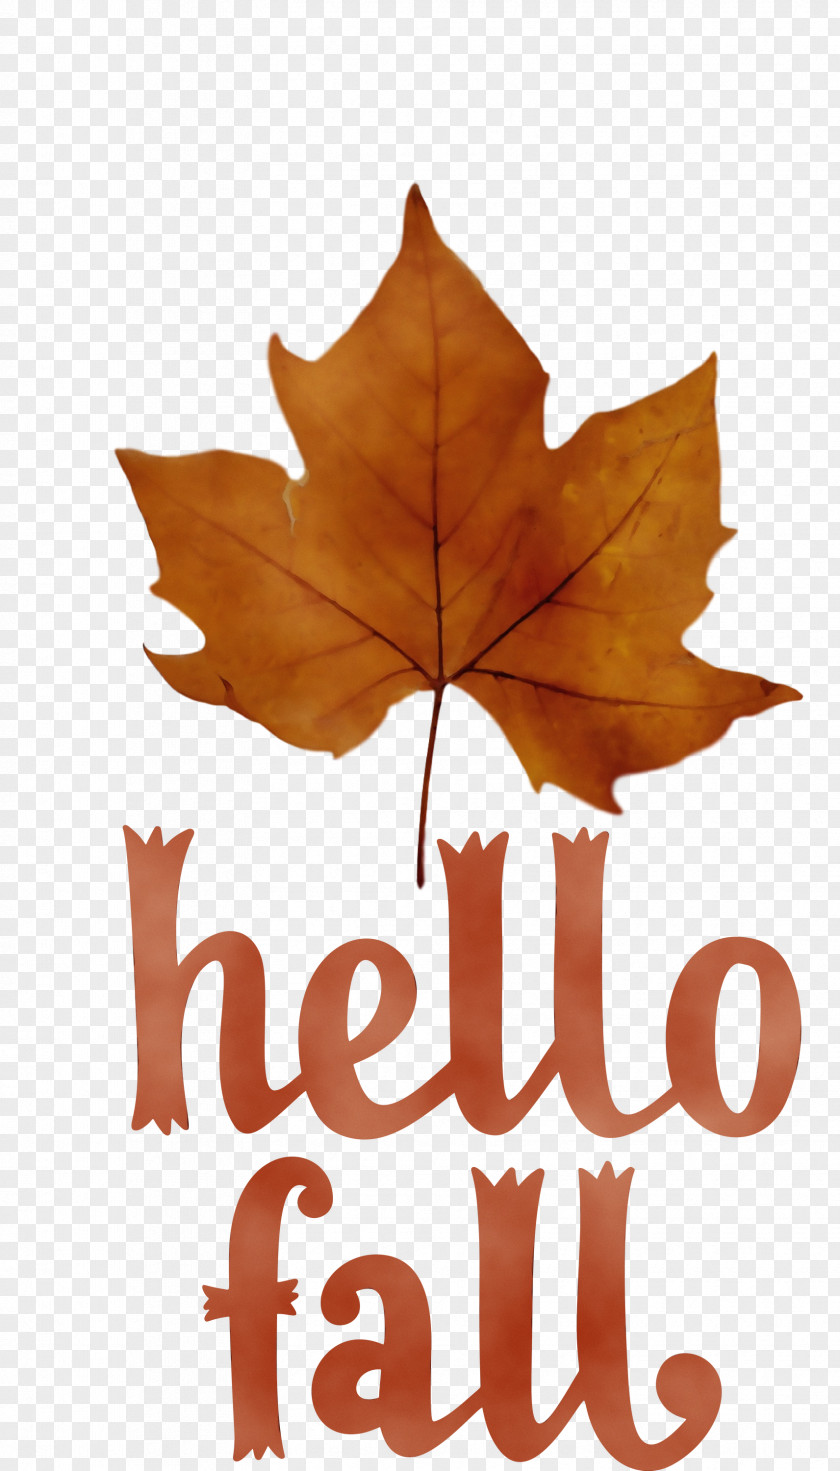 Leaf Maple Leaf / M Font Tree Meter PNG